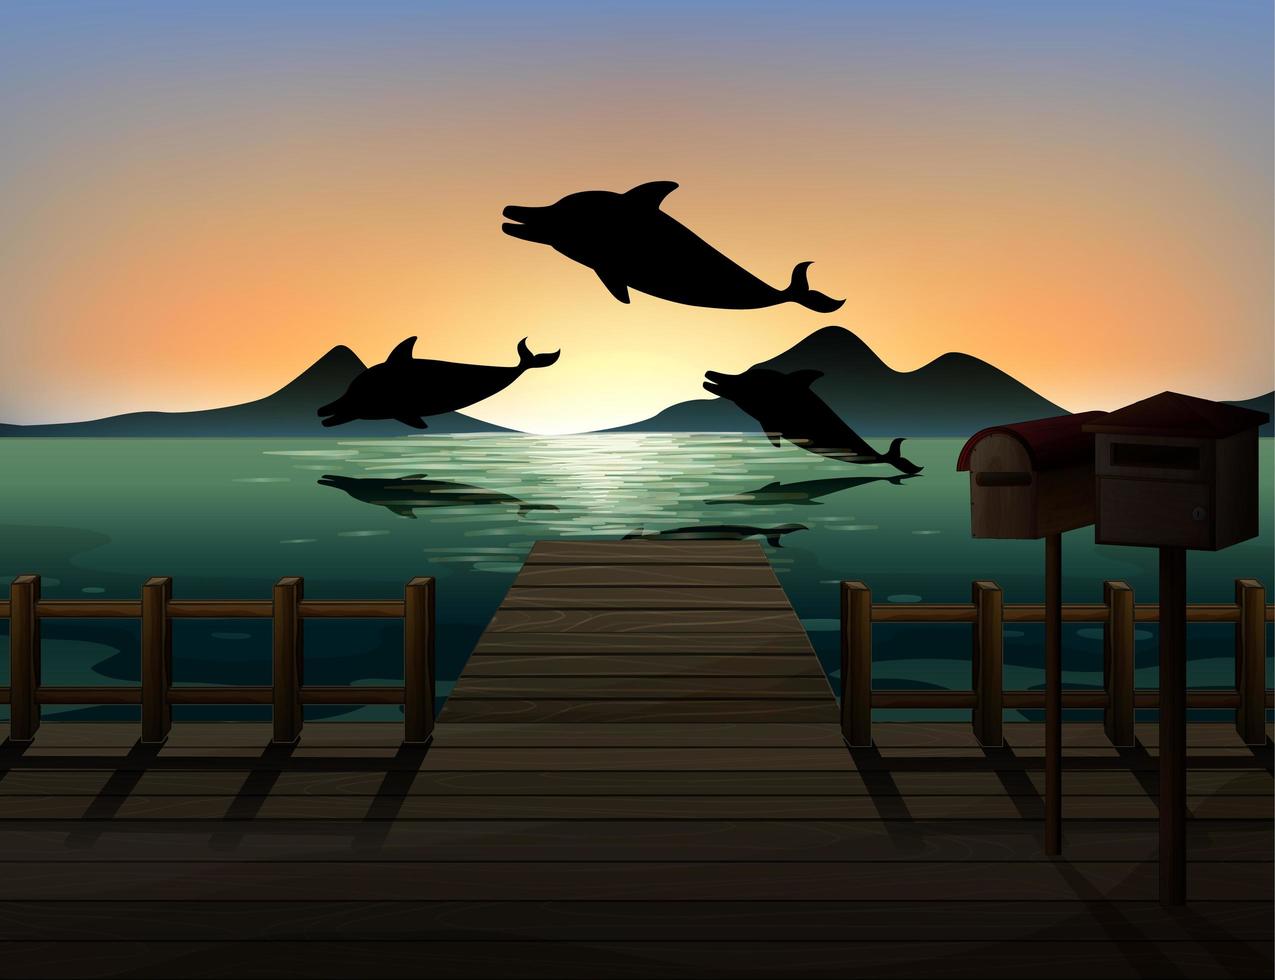 dauphin dans la nature scène silhouette vecteur